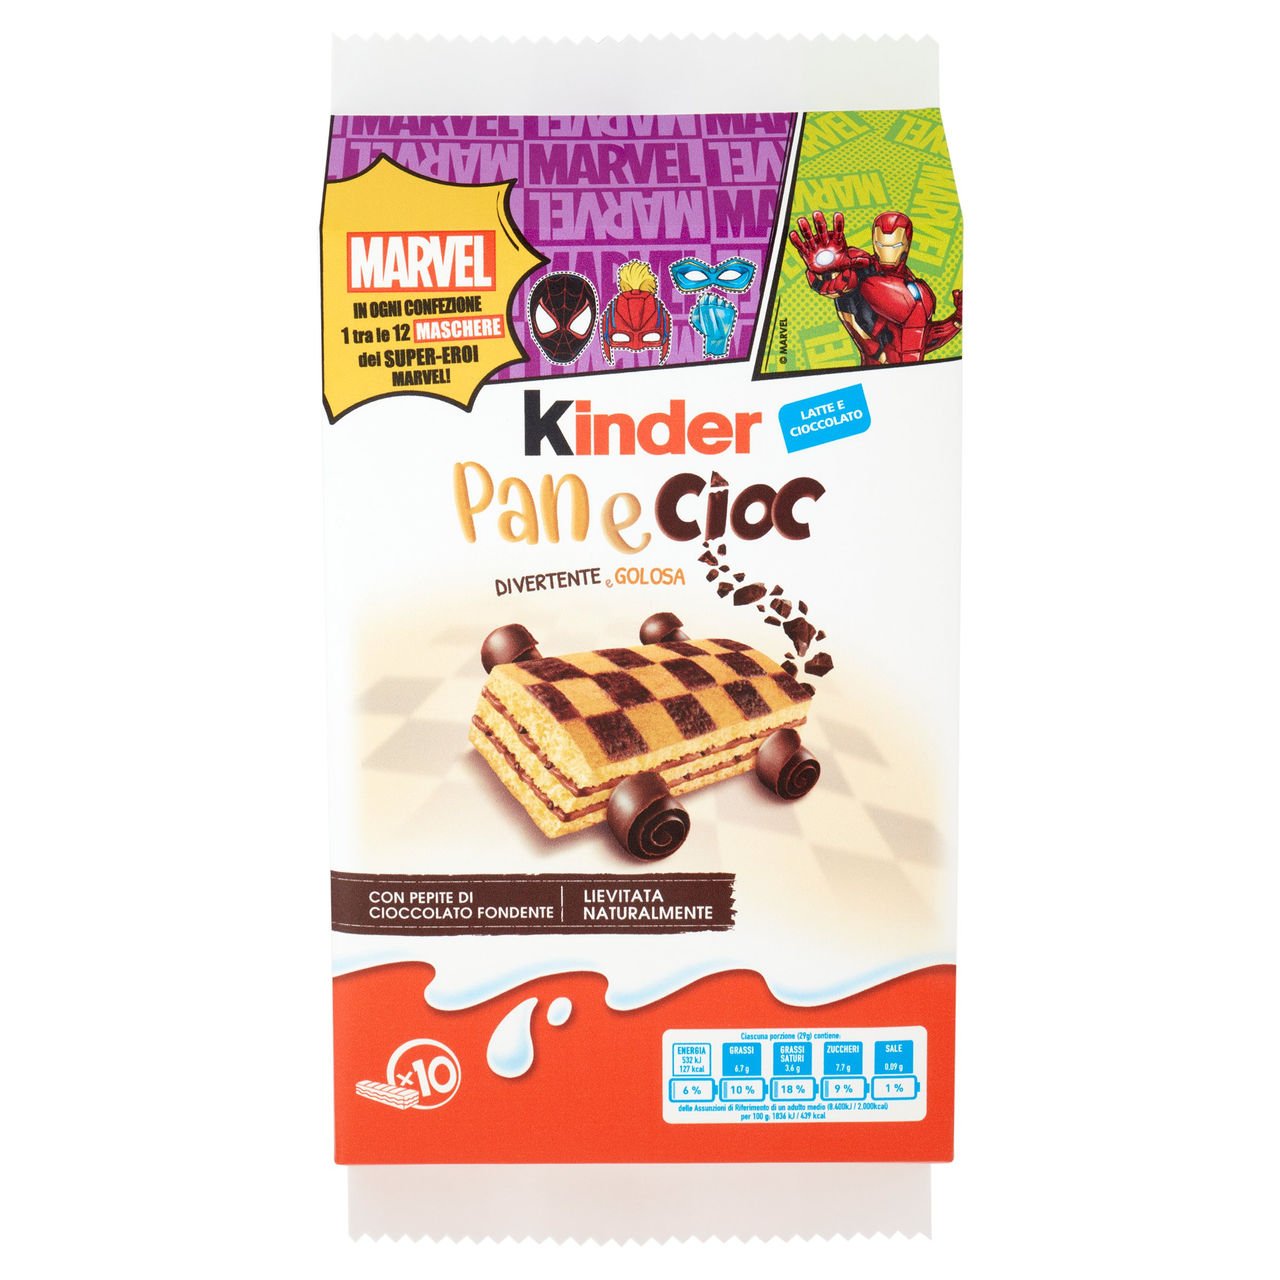 Kinder Panecioc 10 x 29 g vendita online